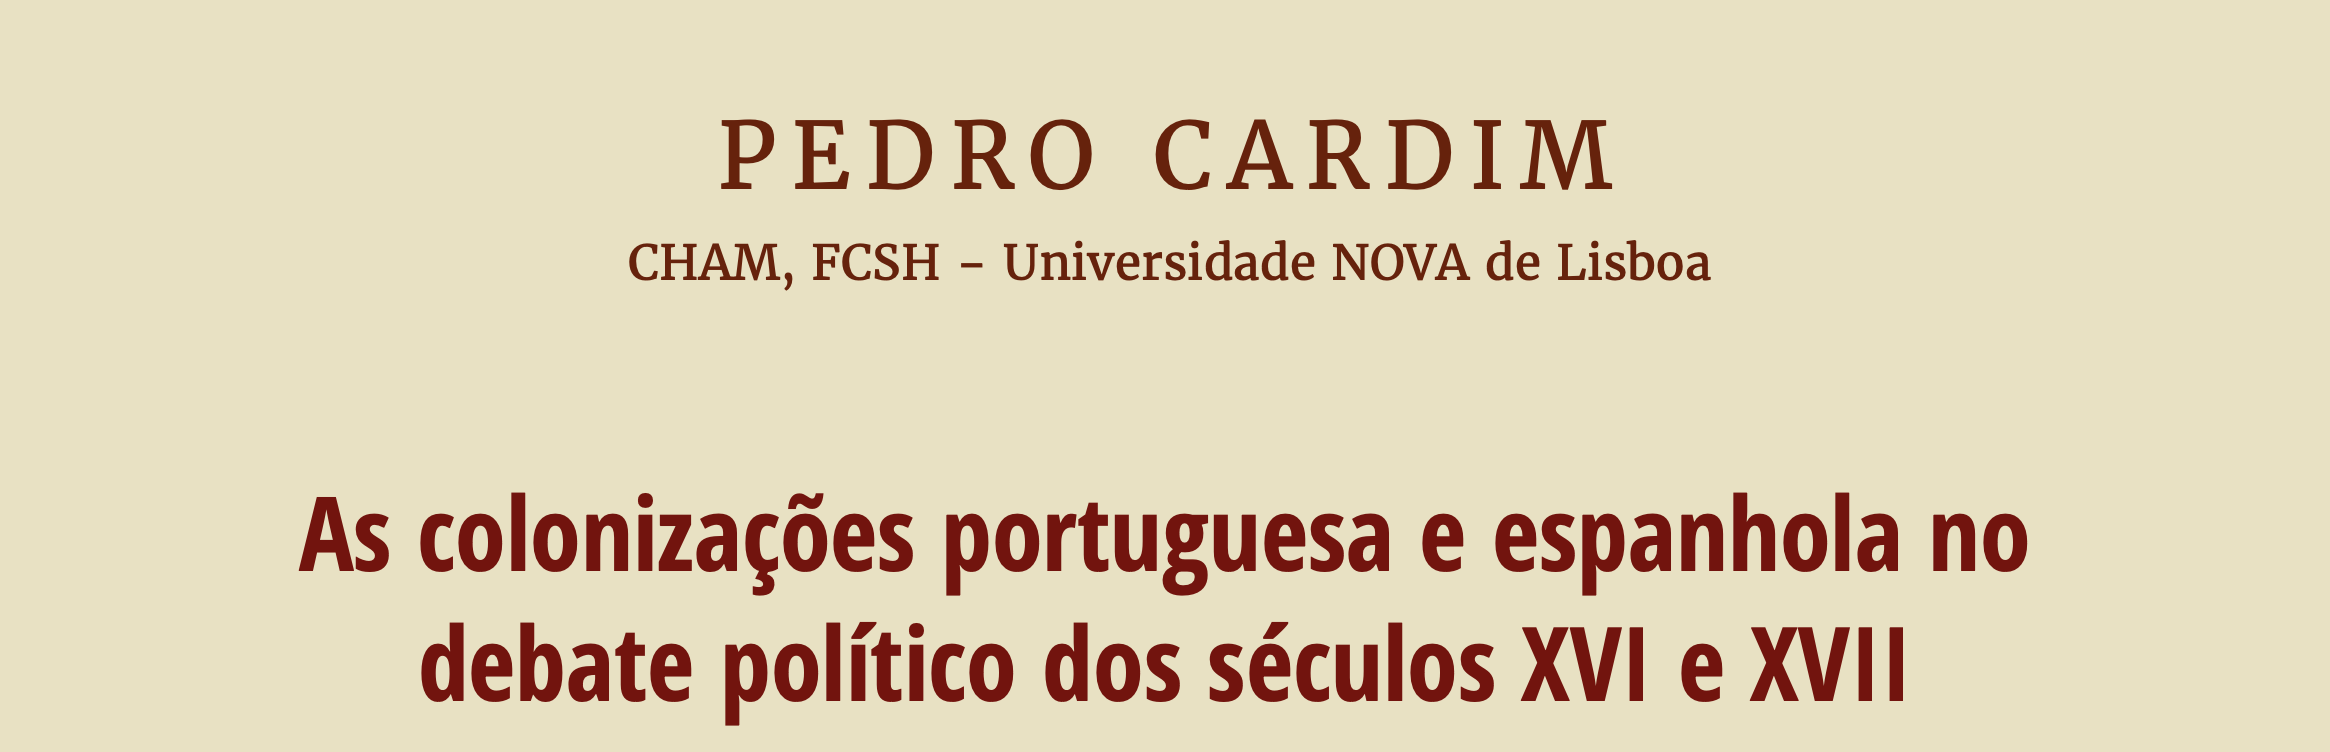 Aula aberta Pedro Cardim: As colonizações portuguesa e espanhola no debate político dos séculos XVI e XVII